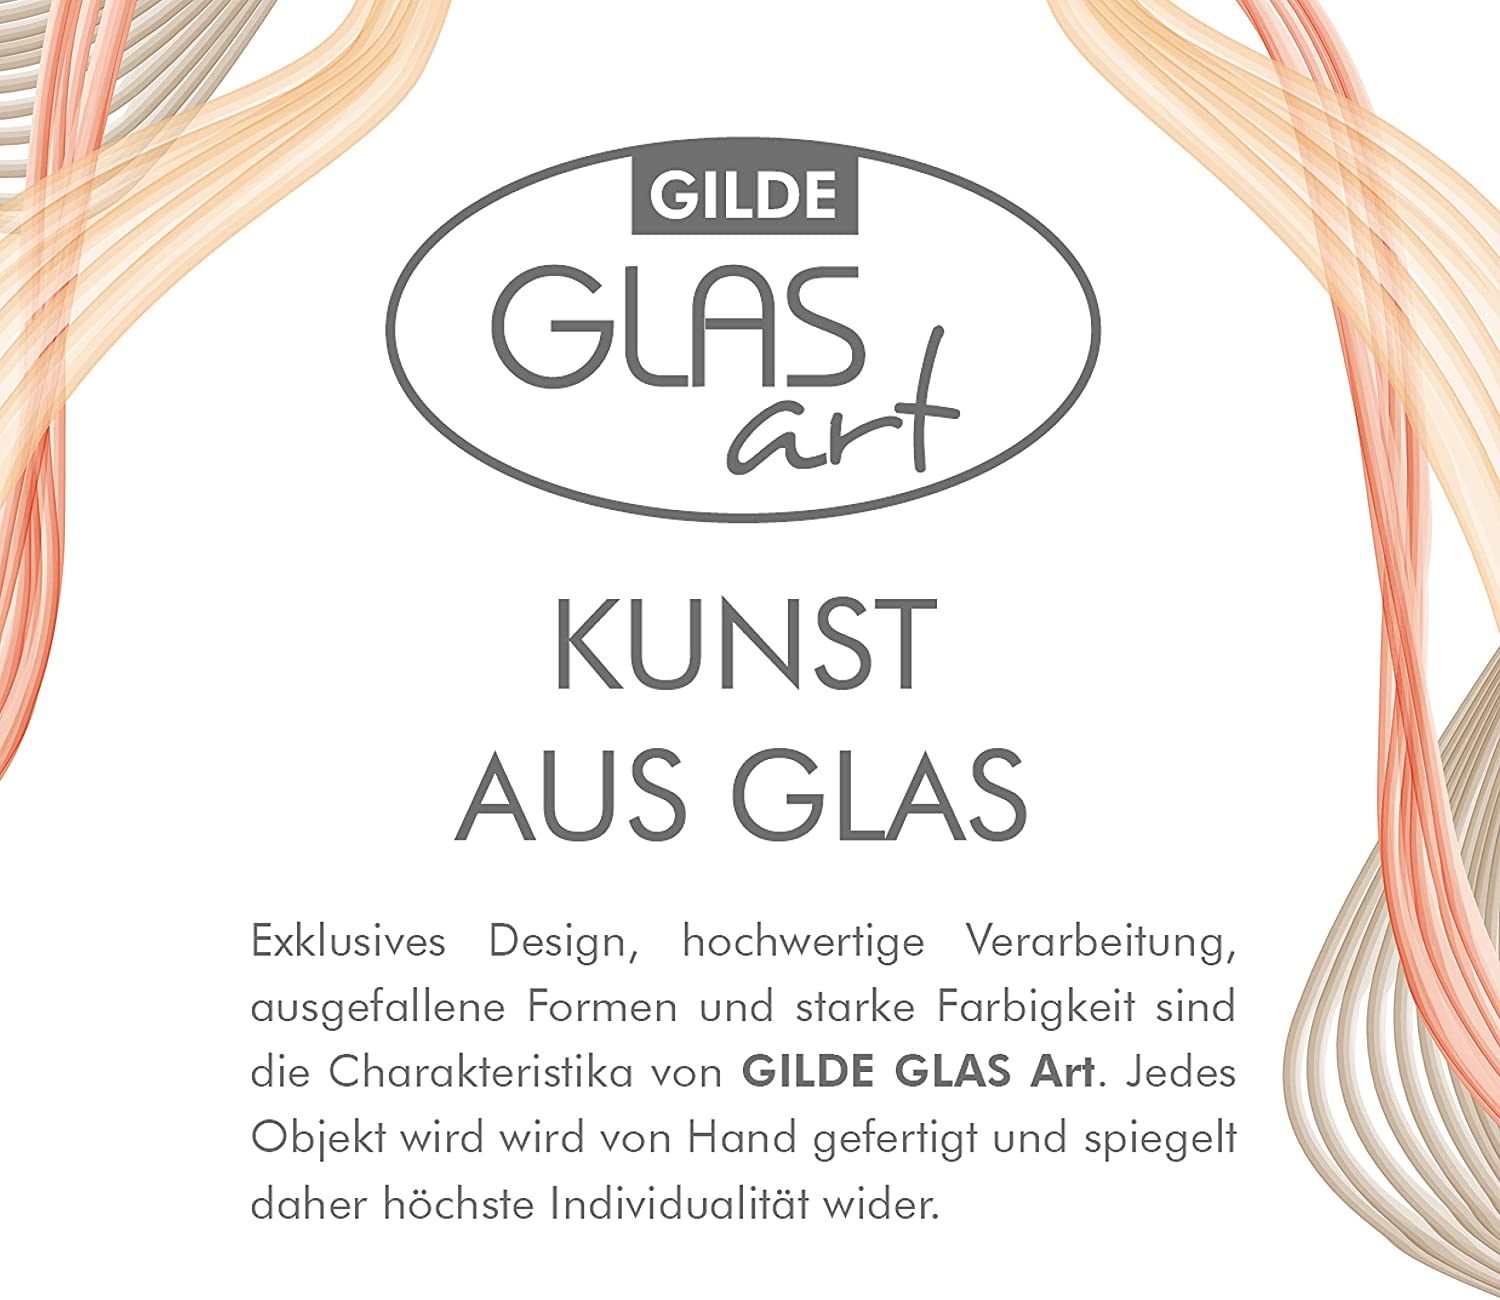 Gilde Glas Art Designer Vase - Handmade From Glass Height 30 Cm